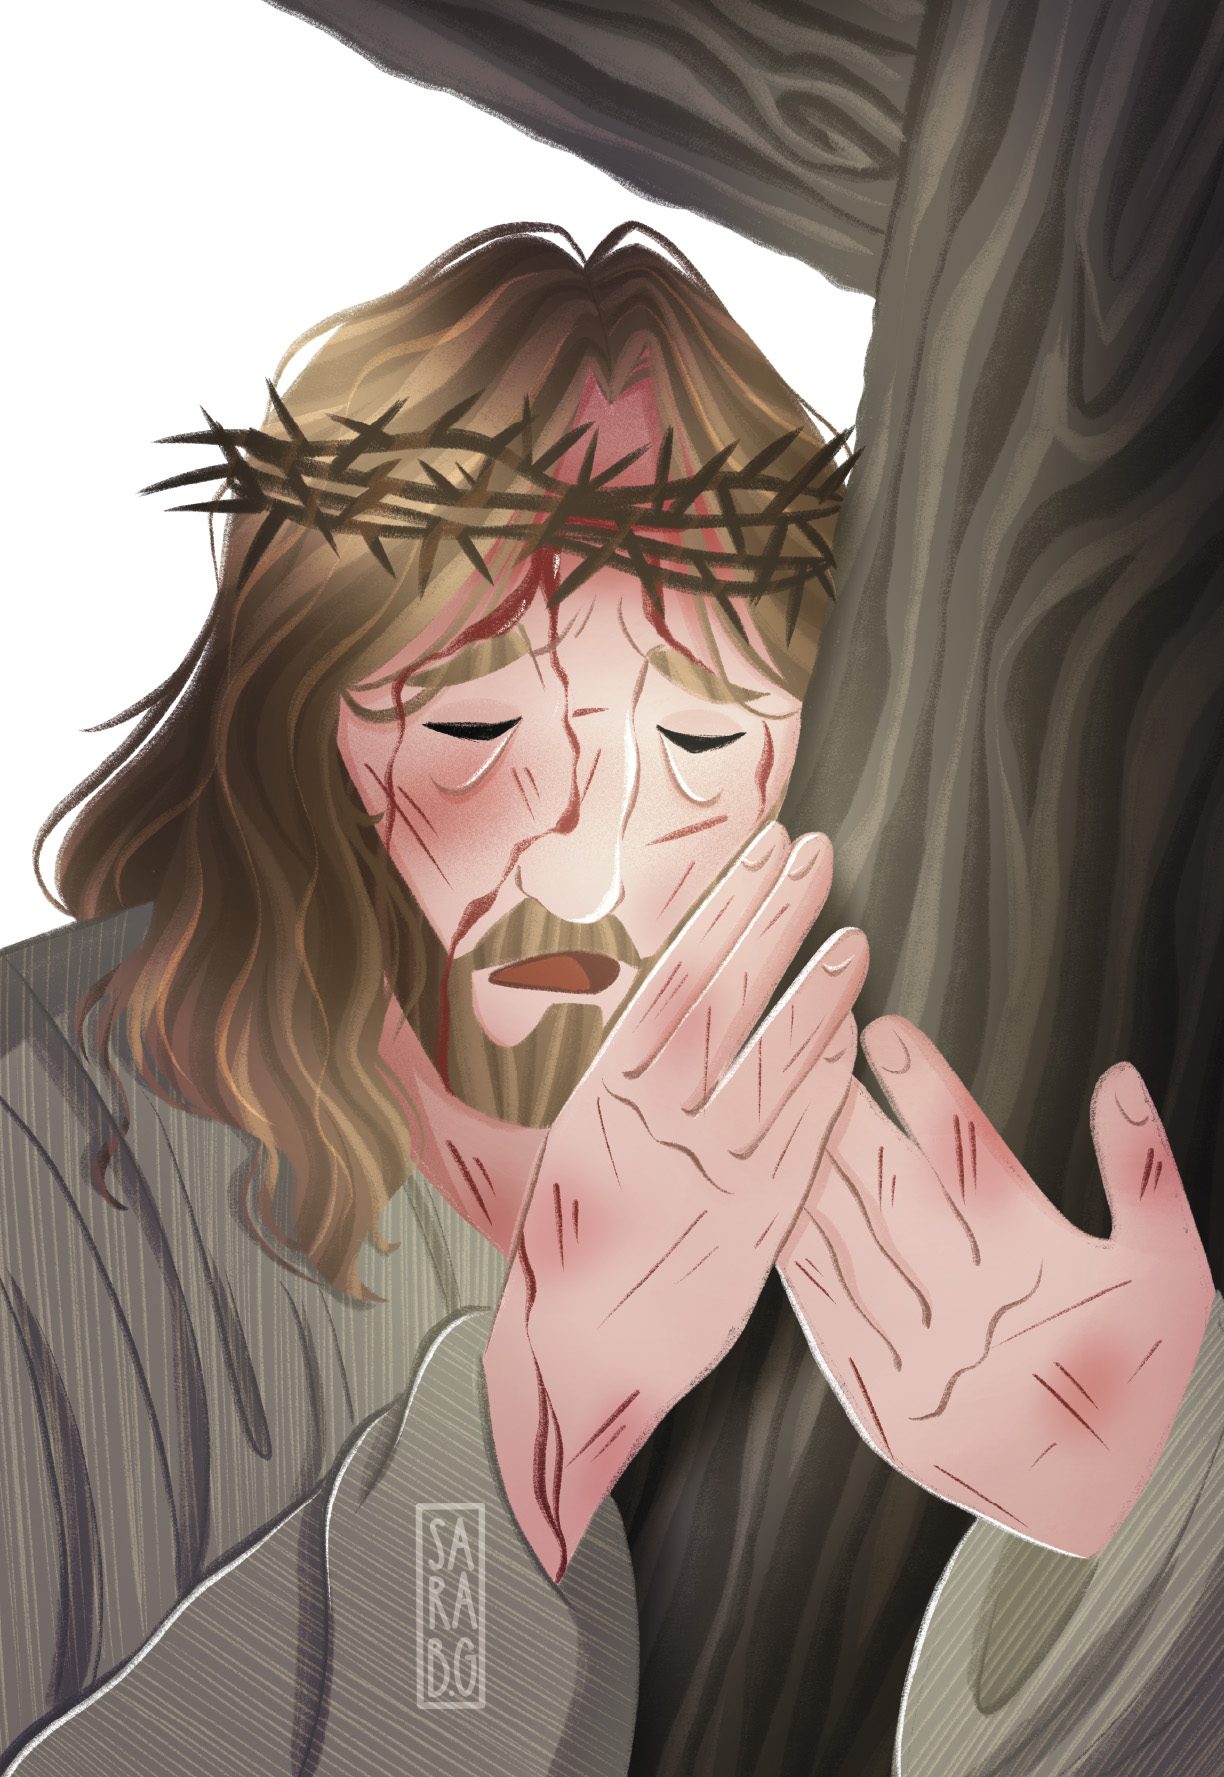 3nity "Jesus Carries Our Cross" eCard by Sara b.g.